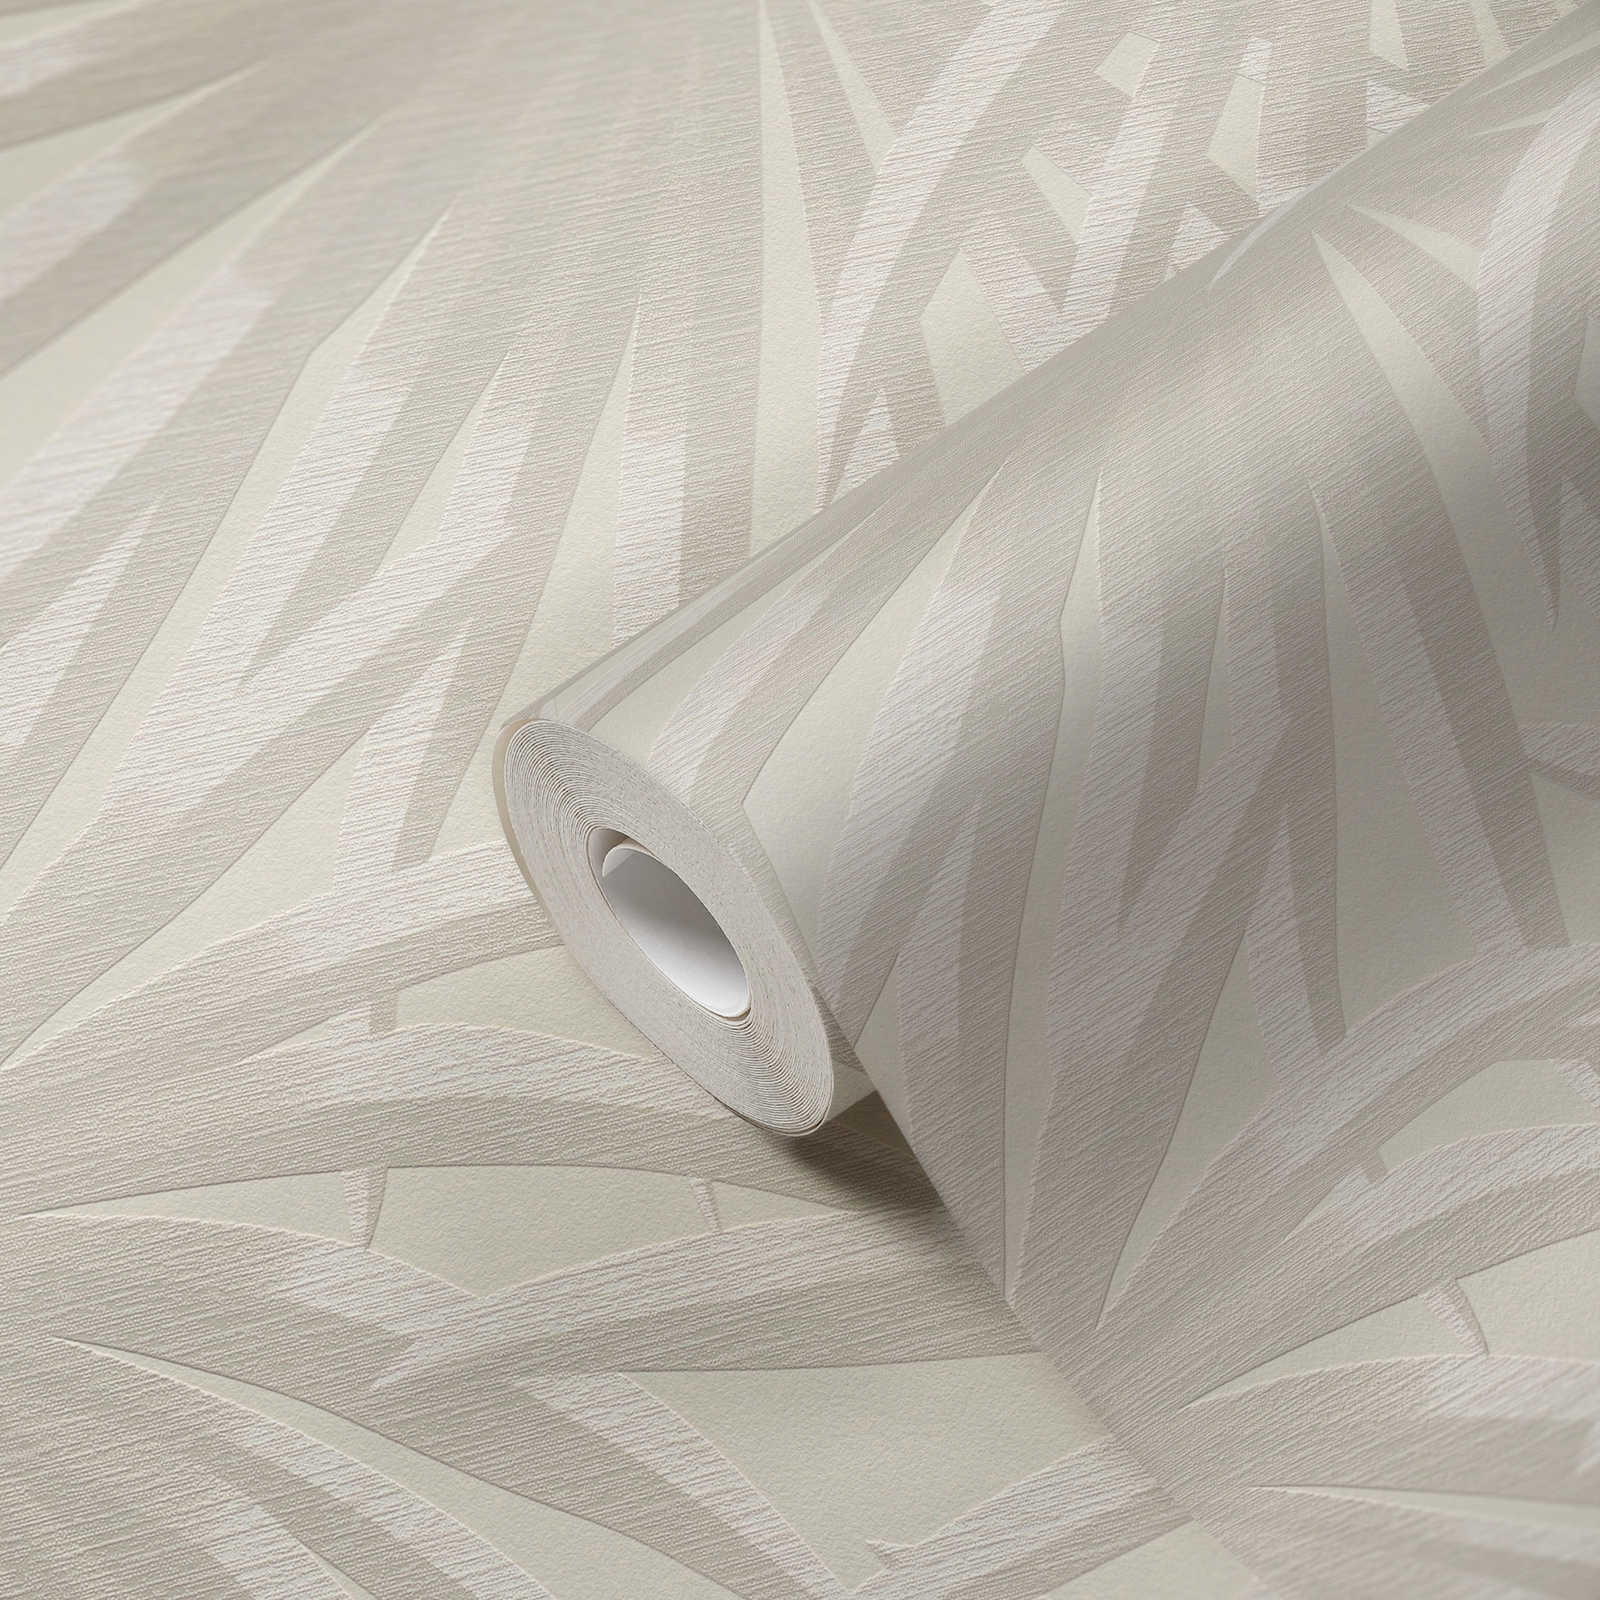             Vliesbehang met palmbladerenpatroon in zachte kleuren - crème, lichtgrijs
        